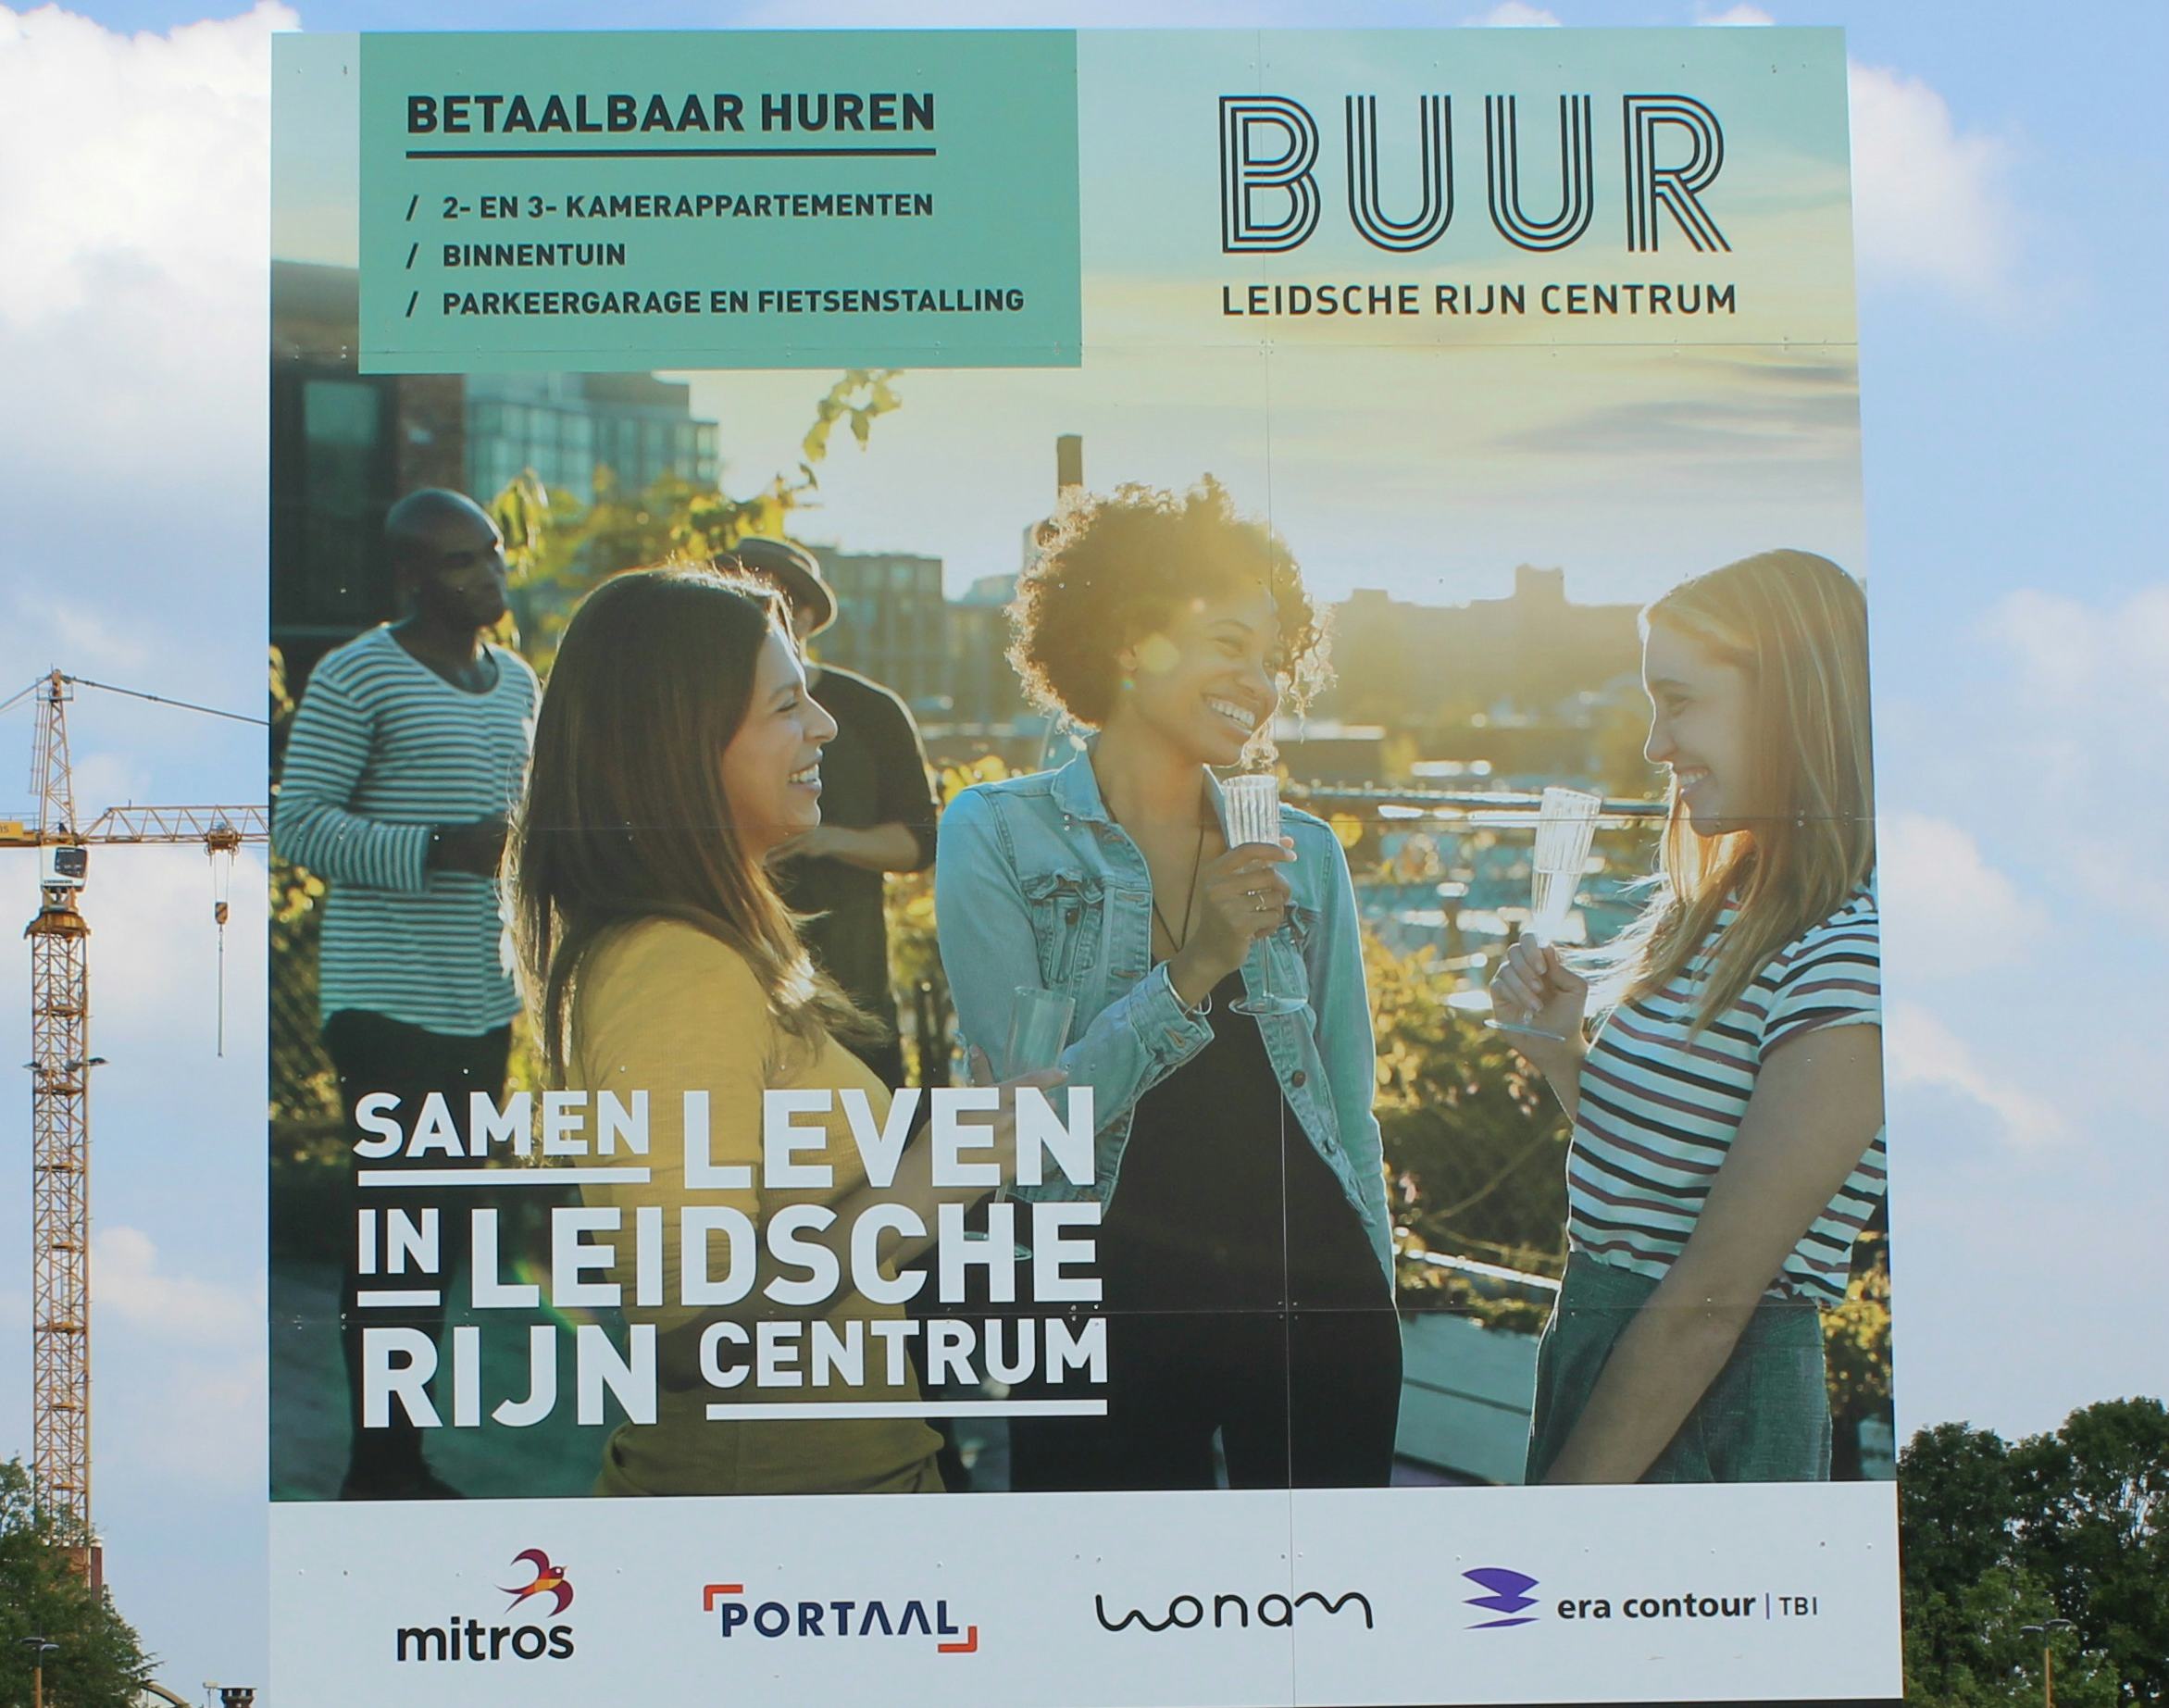 BUUR, nieuwe hotspot in Leidsche Rijn Centrum